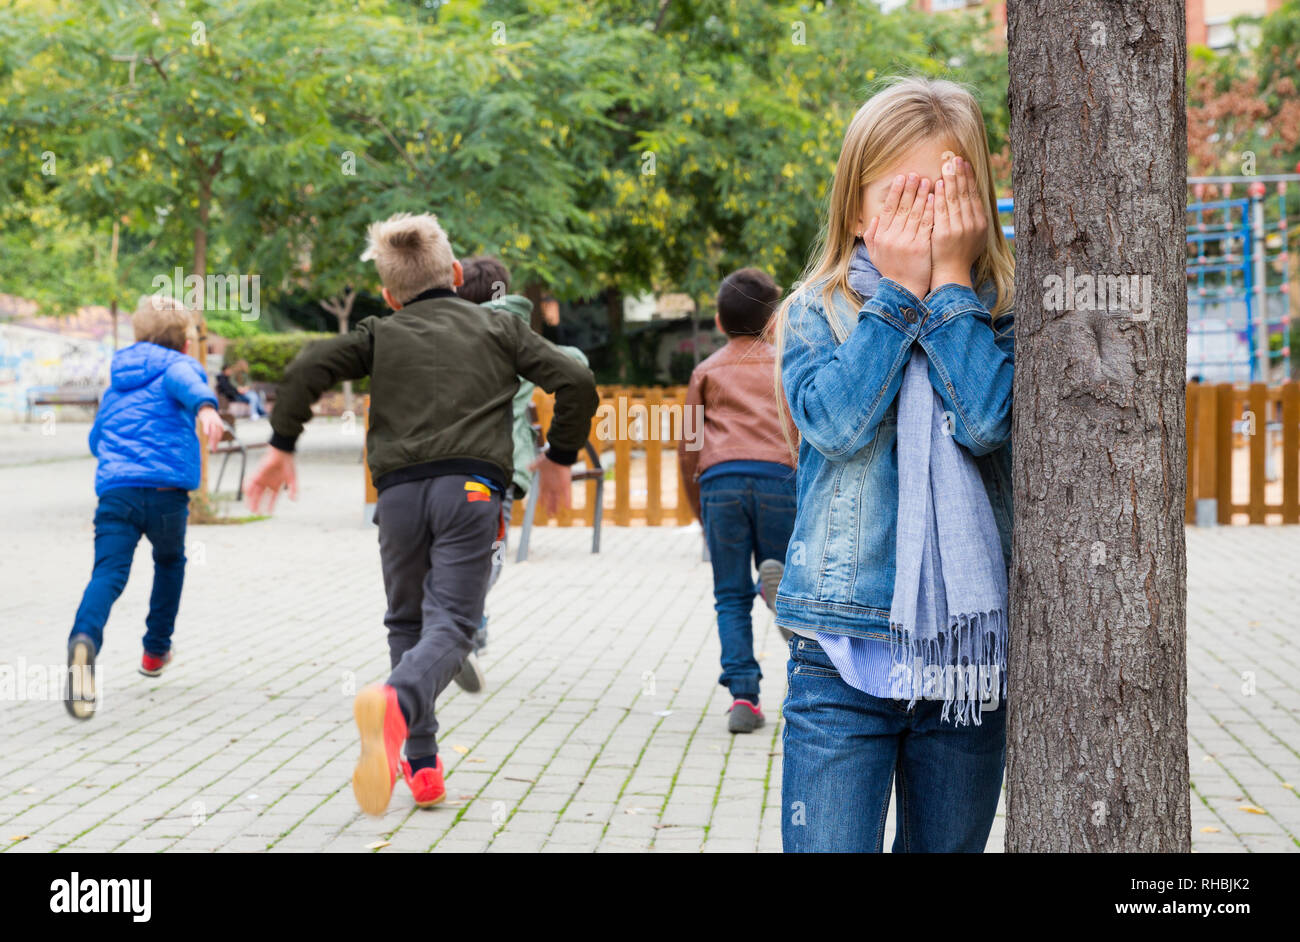 Kinder spielen Verstecken und auf der Straße suchen Stockfotografie - Alamy